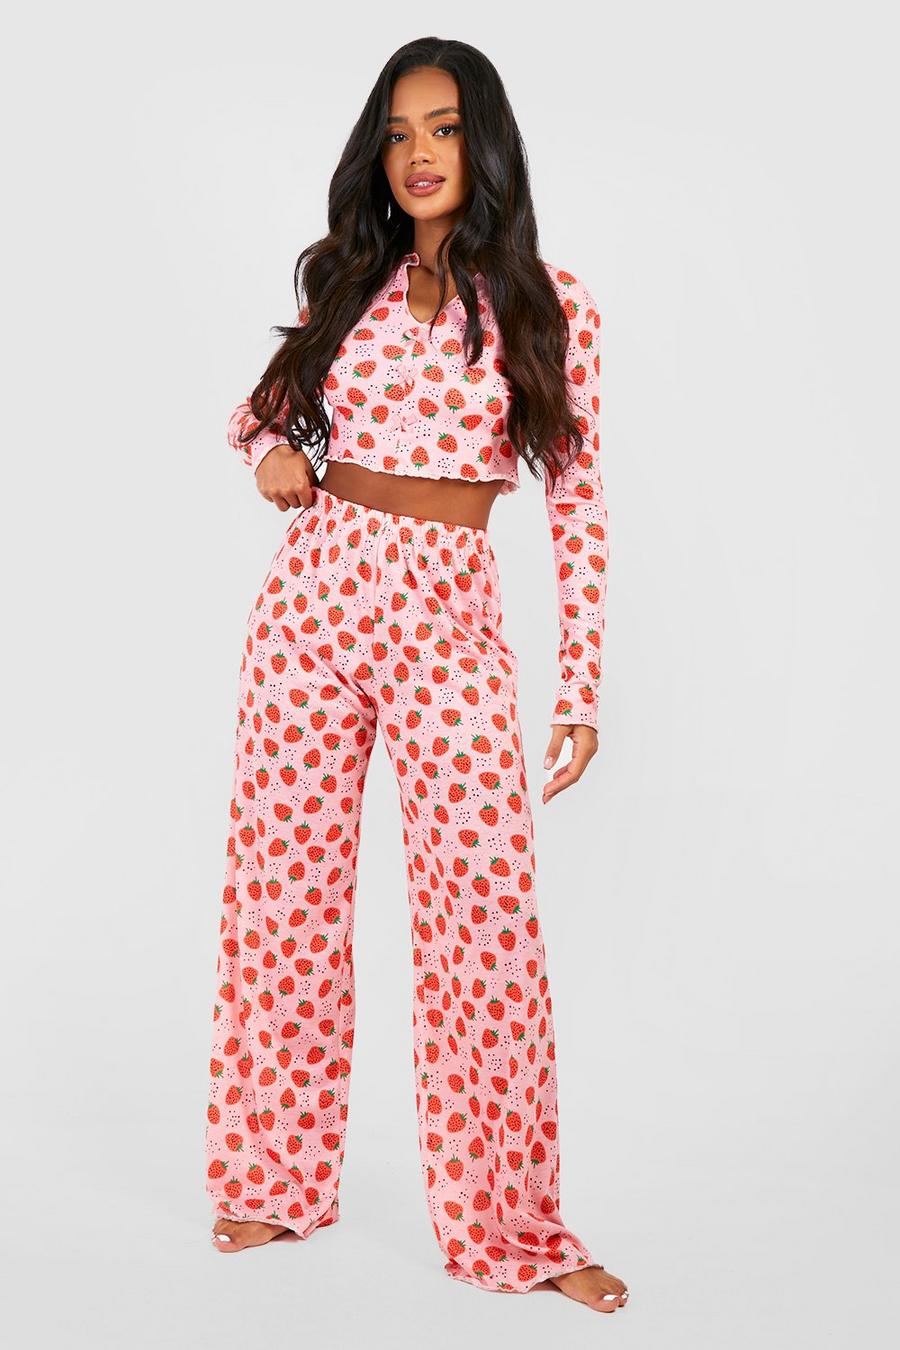 Cute Strawberry Pyjamas Set